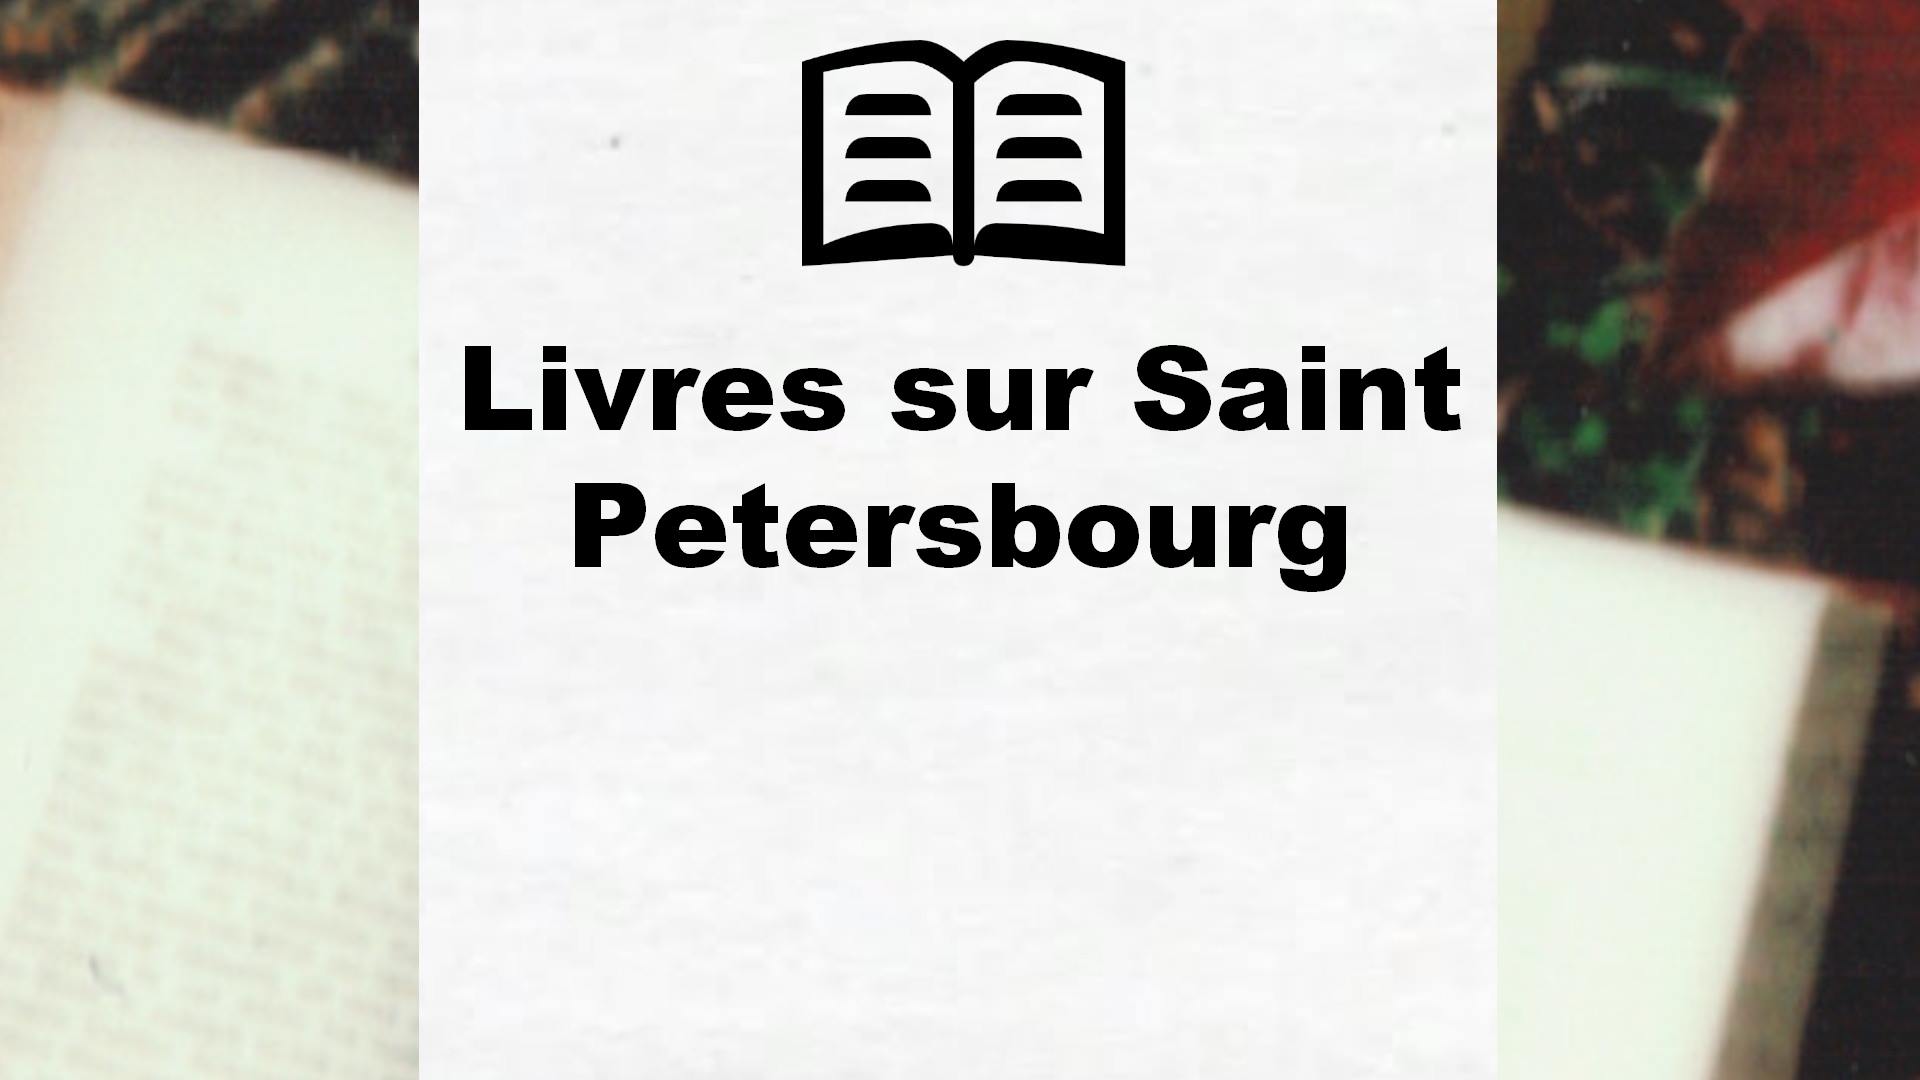 Livres sur Saint Petersbourg